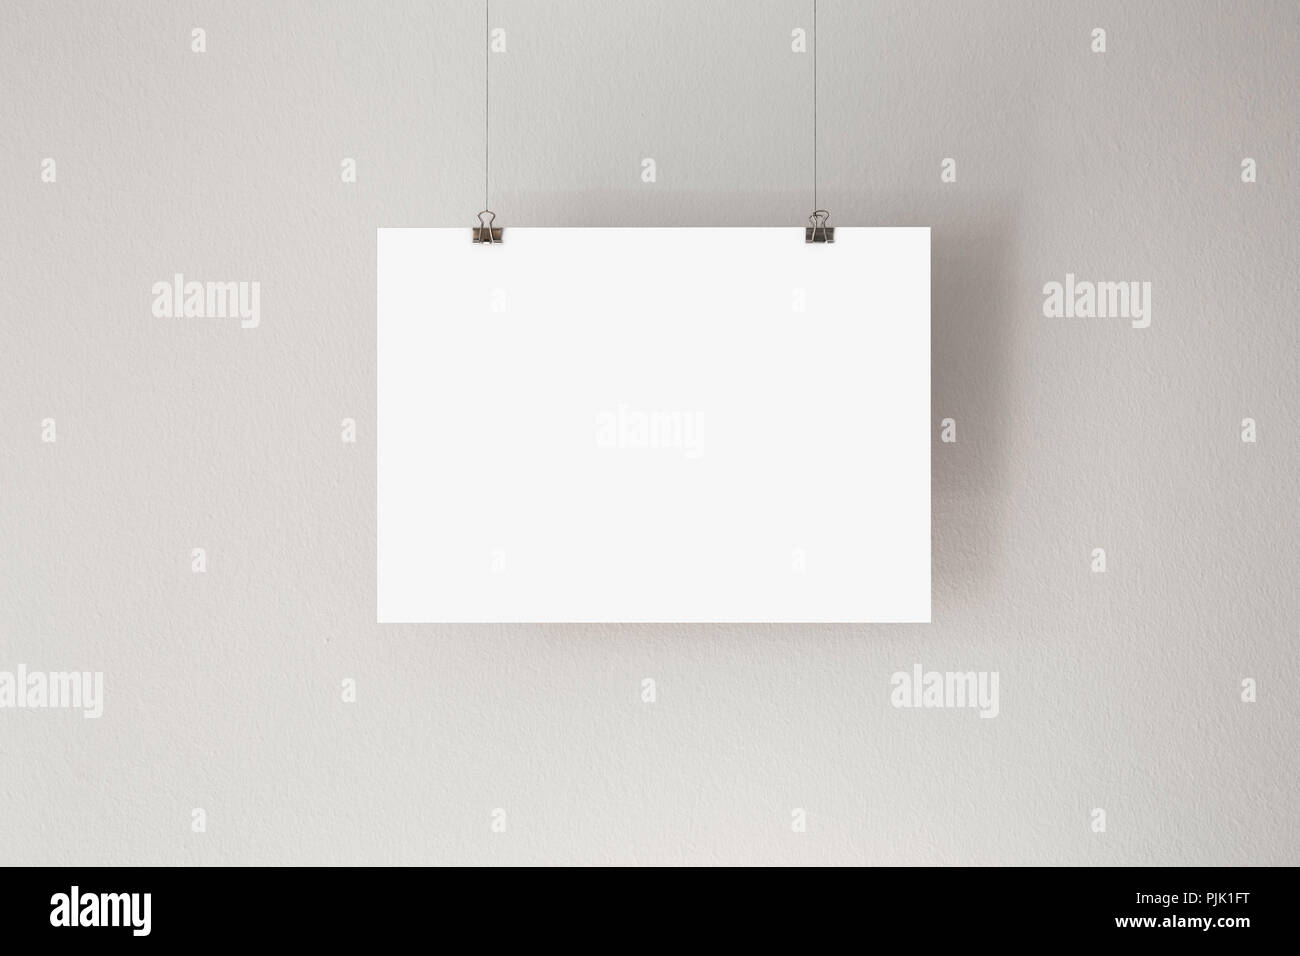 Une feuille de papier vierge avec de l'espace libre, pendant du plafond Banque D'Images